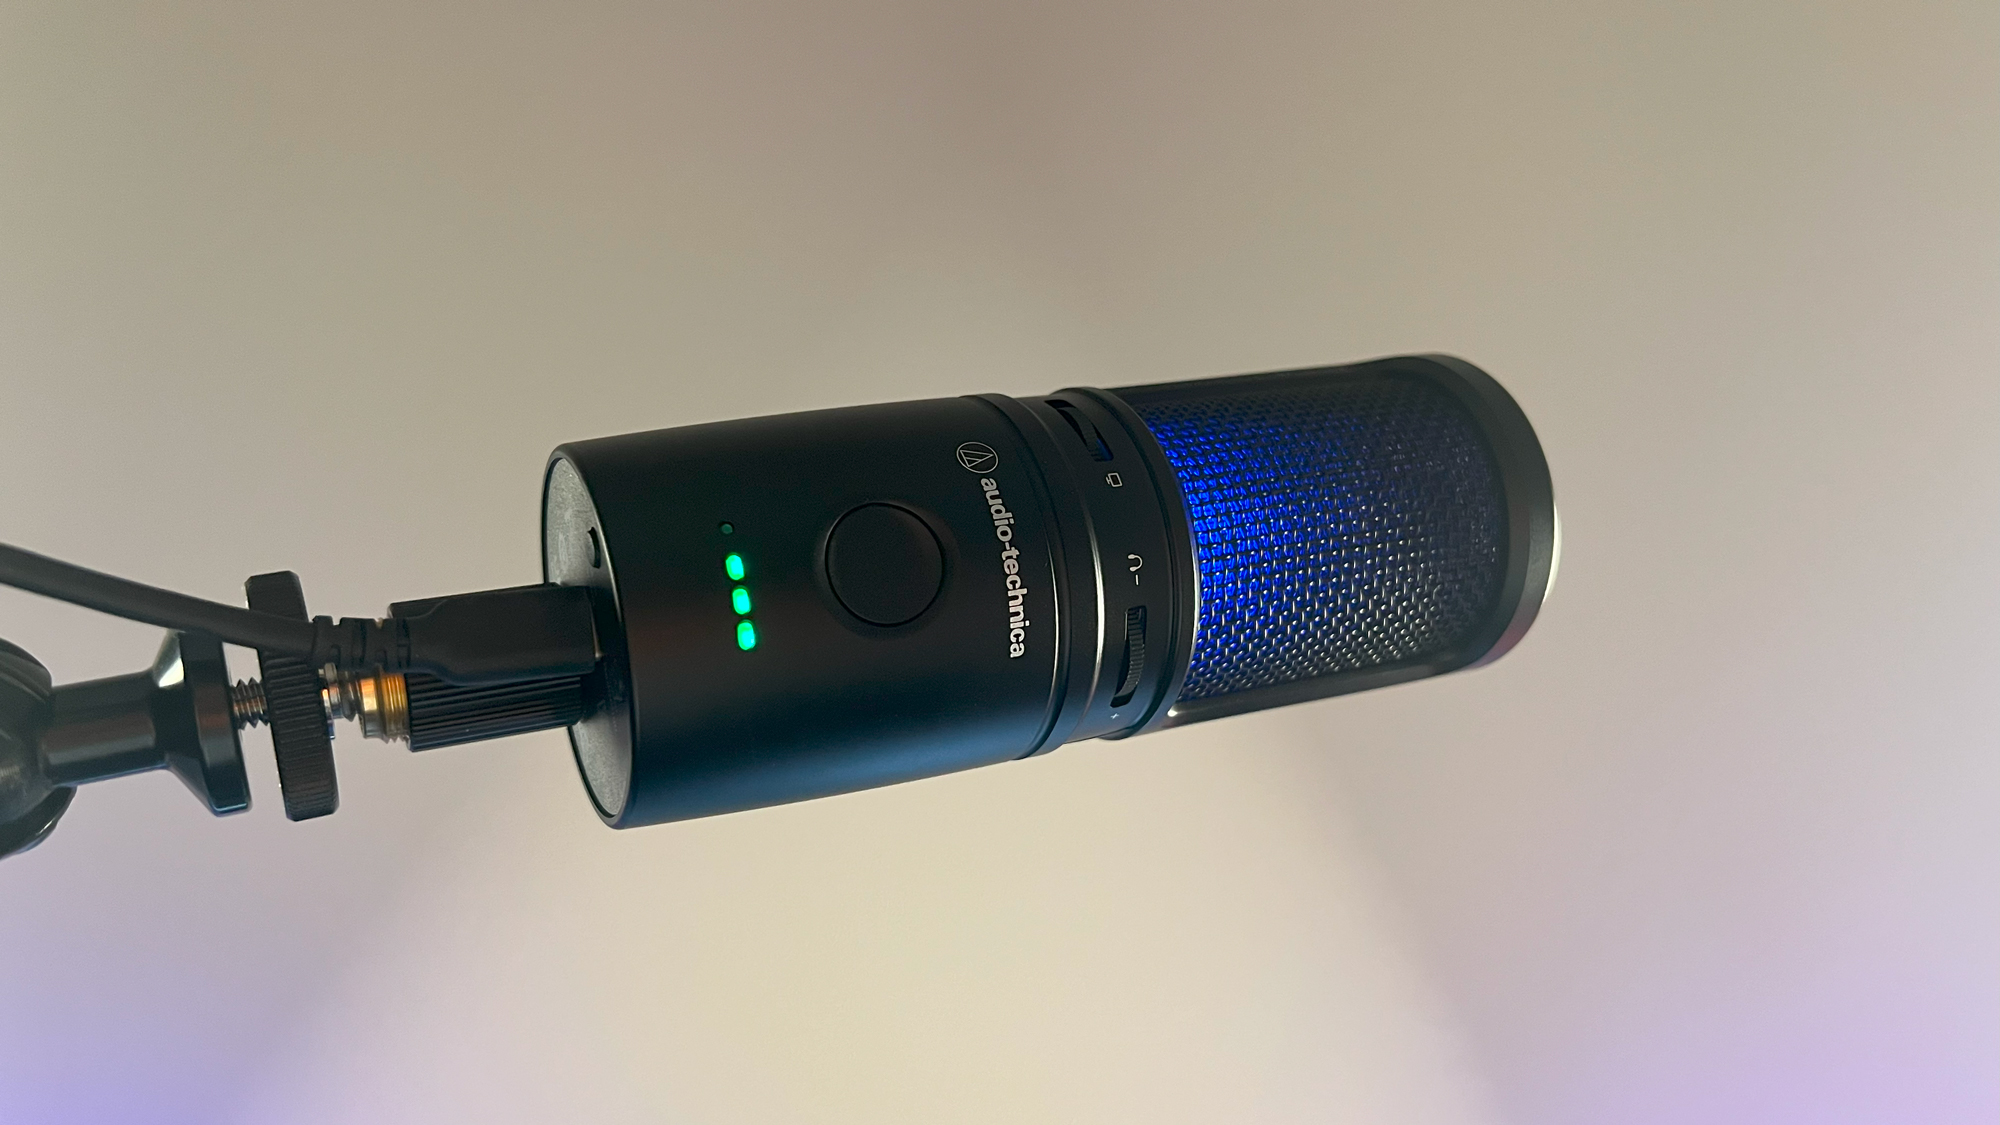 Lampy operacyjne Audio-Technica AT2020USB-XP, w tym niebieskie światło RGB przez kratkę